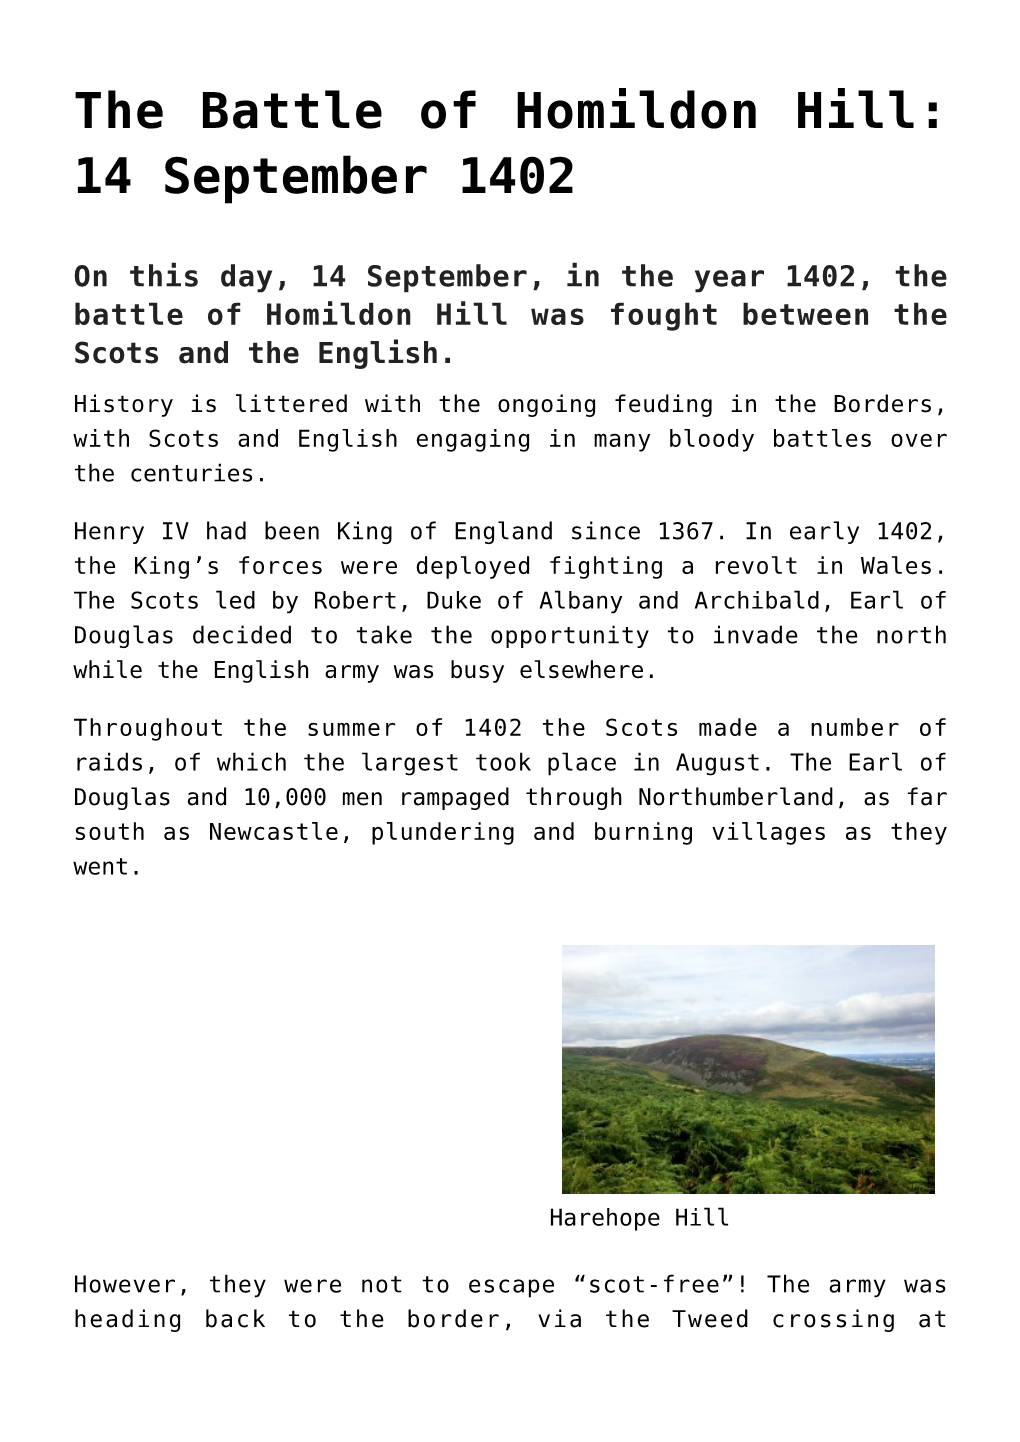 The Battle of Homildon Hill: 14 September 1402